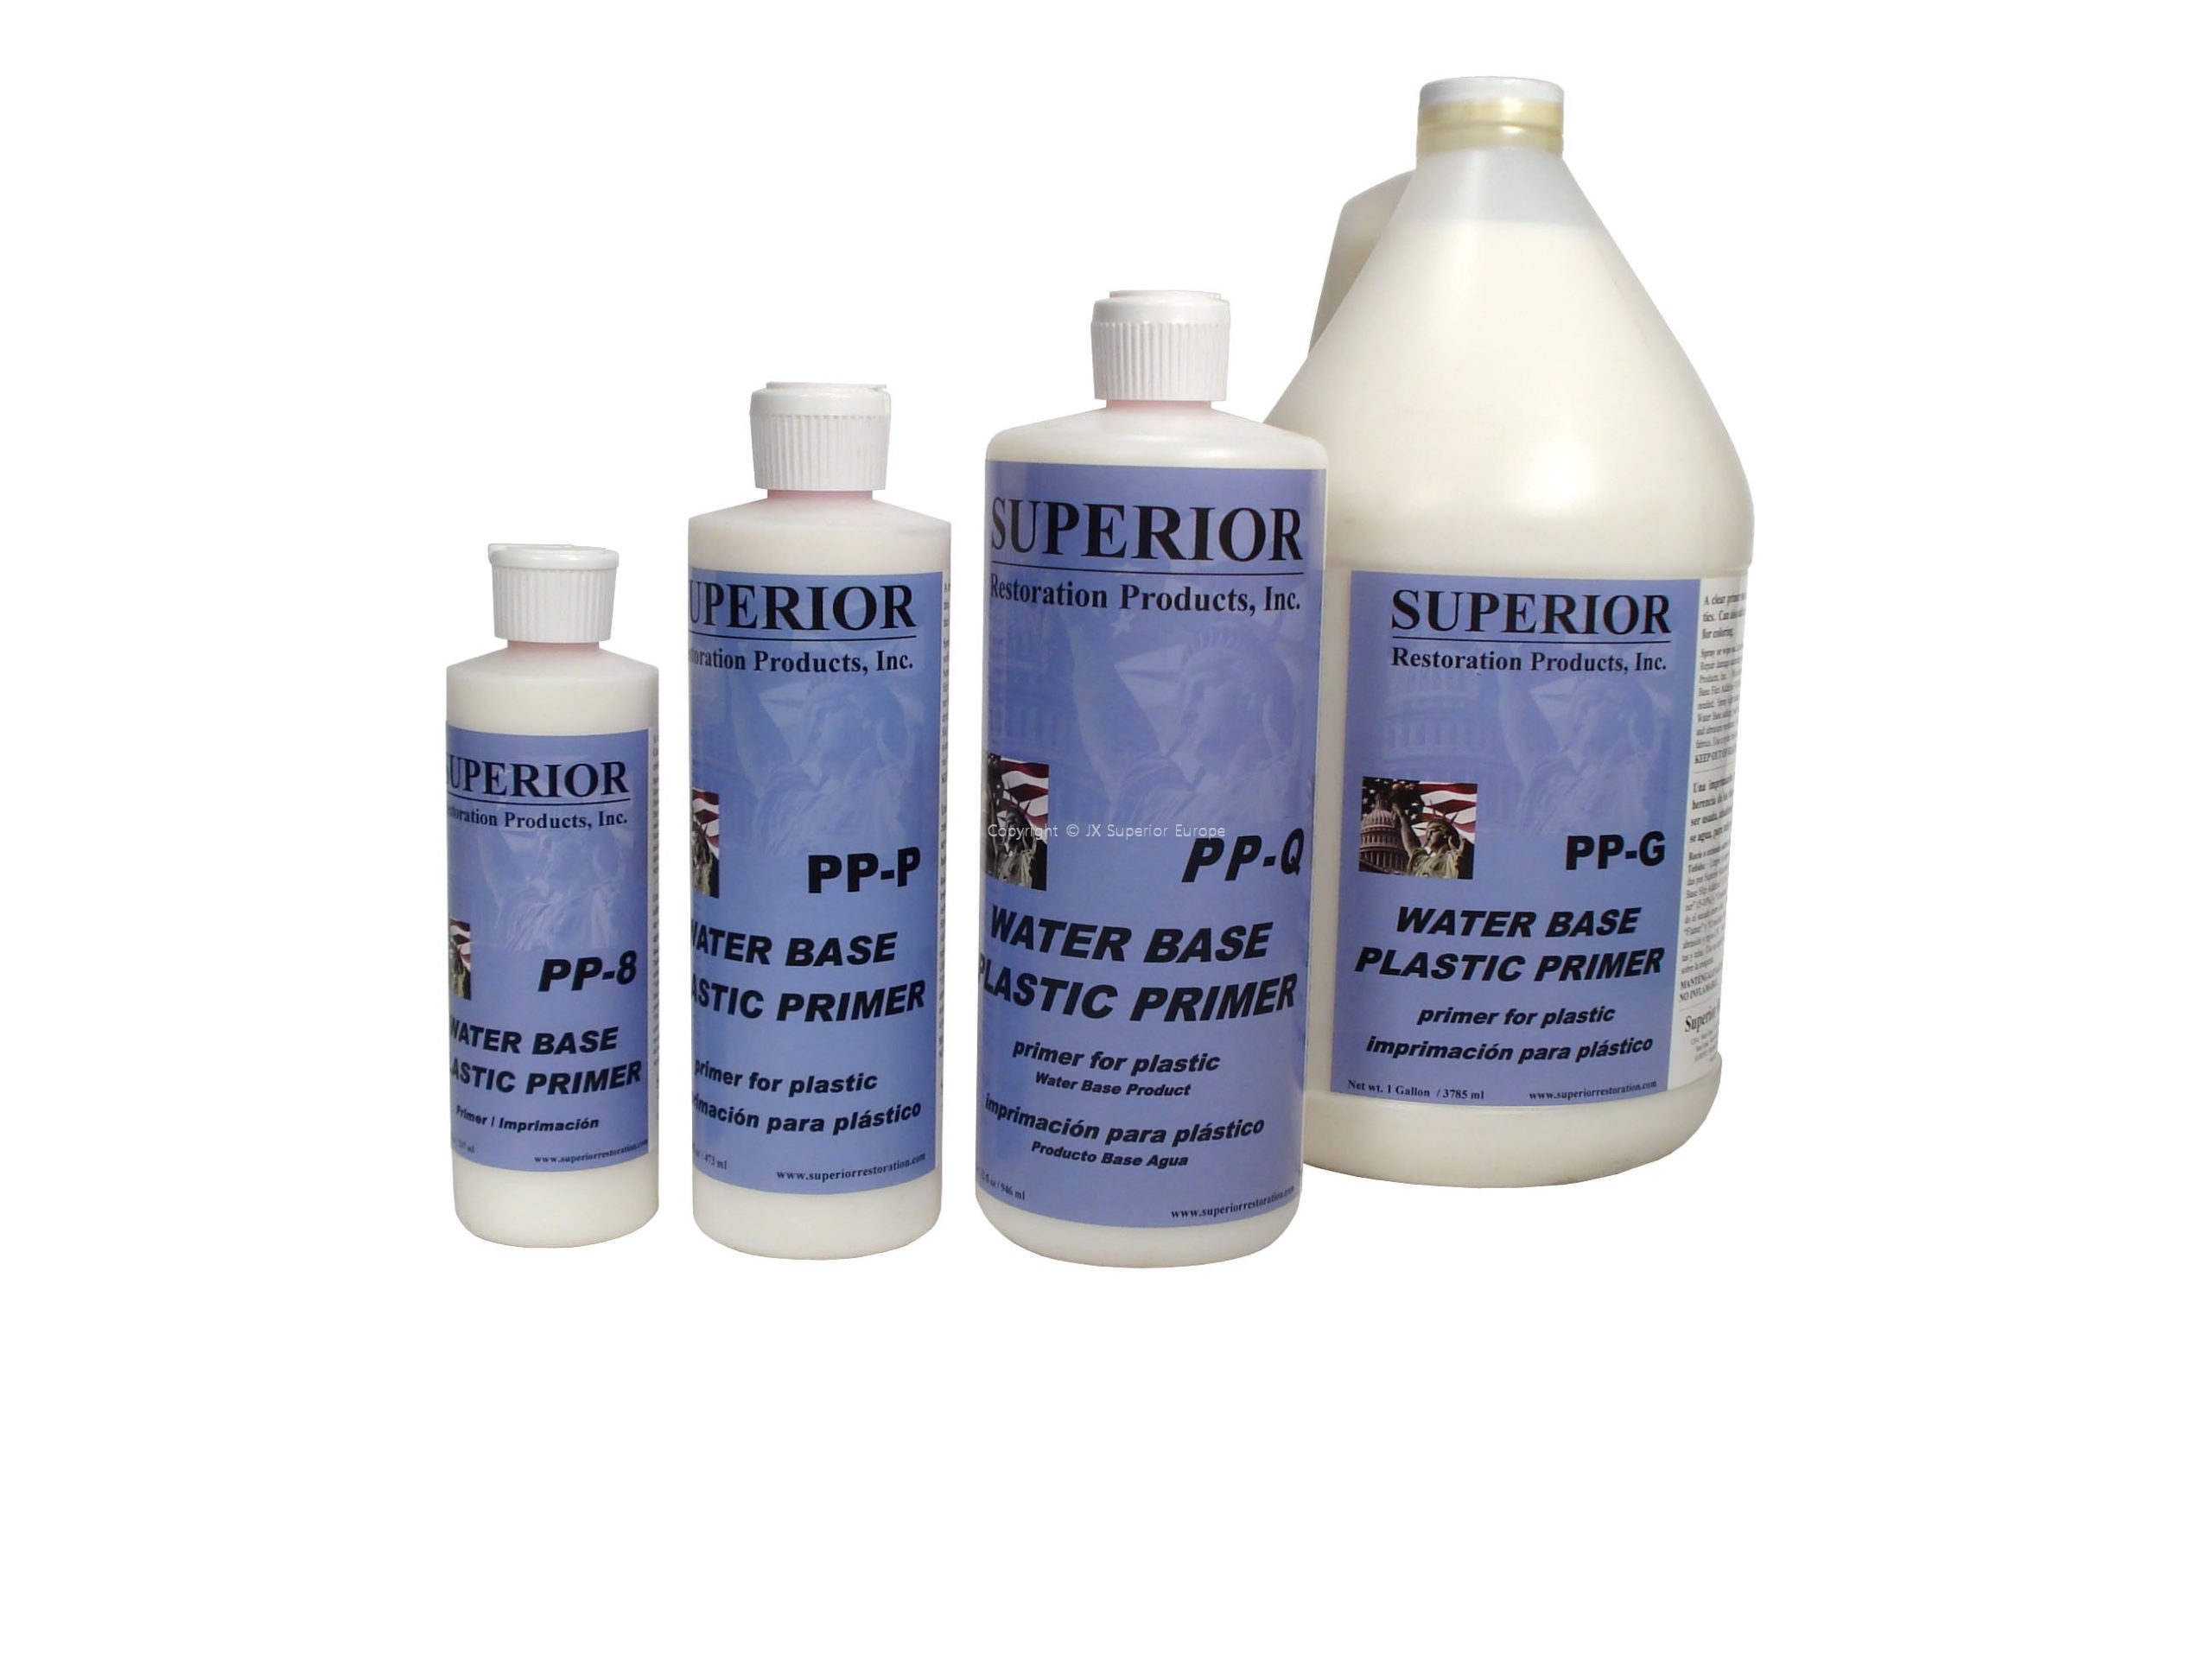 4 oz Water Base Plastic Primer - PP-4 - Superior Restoration